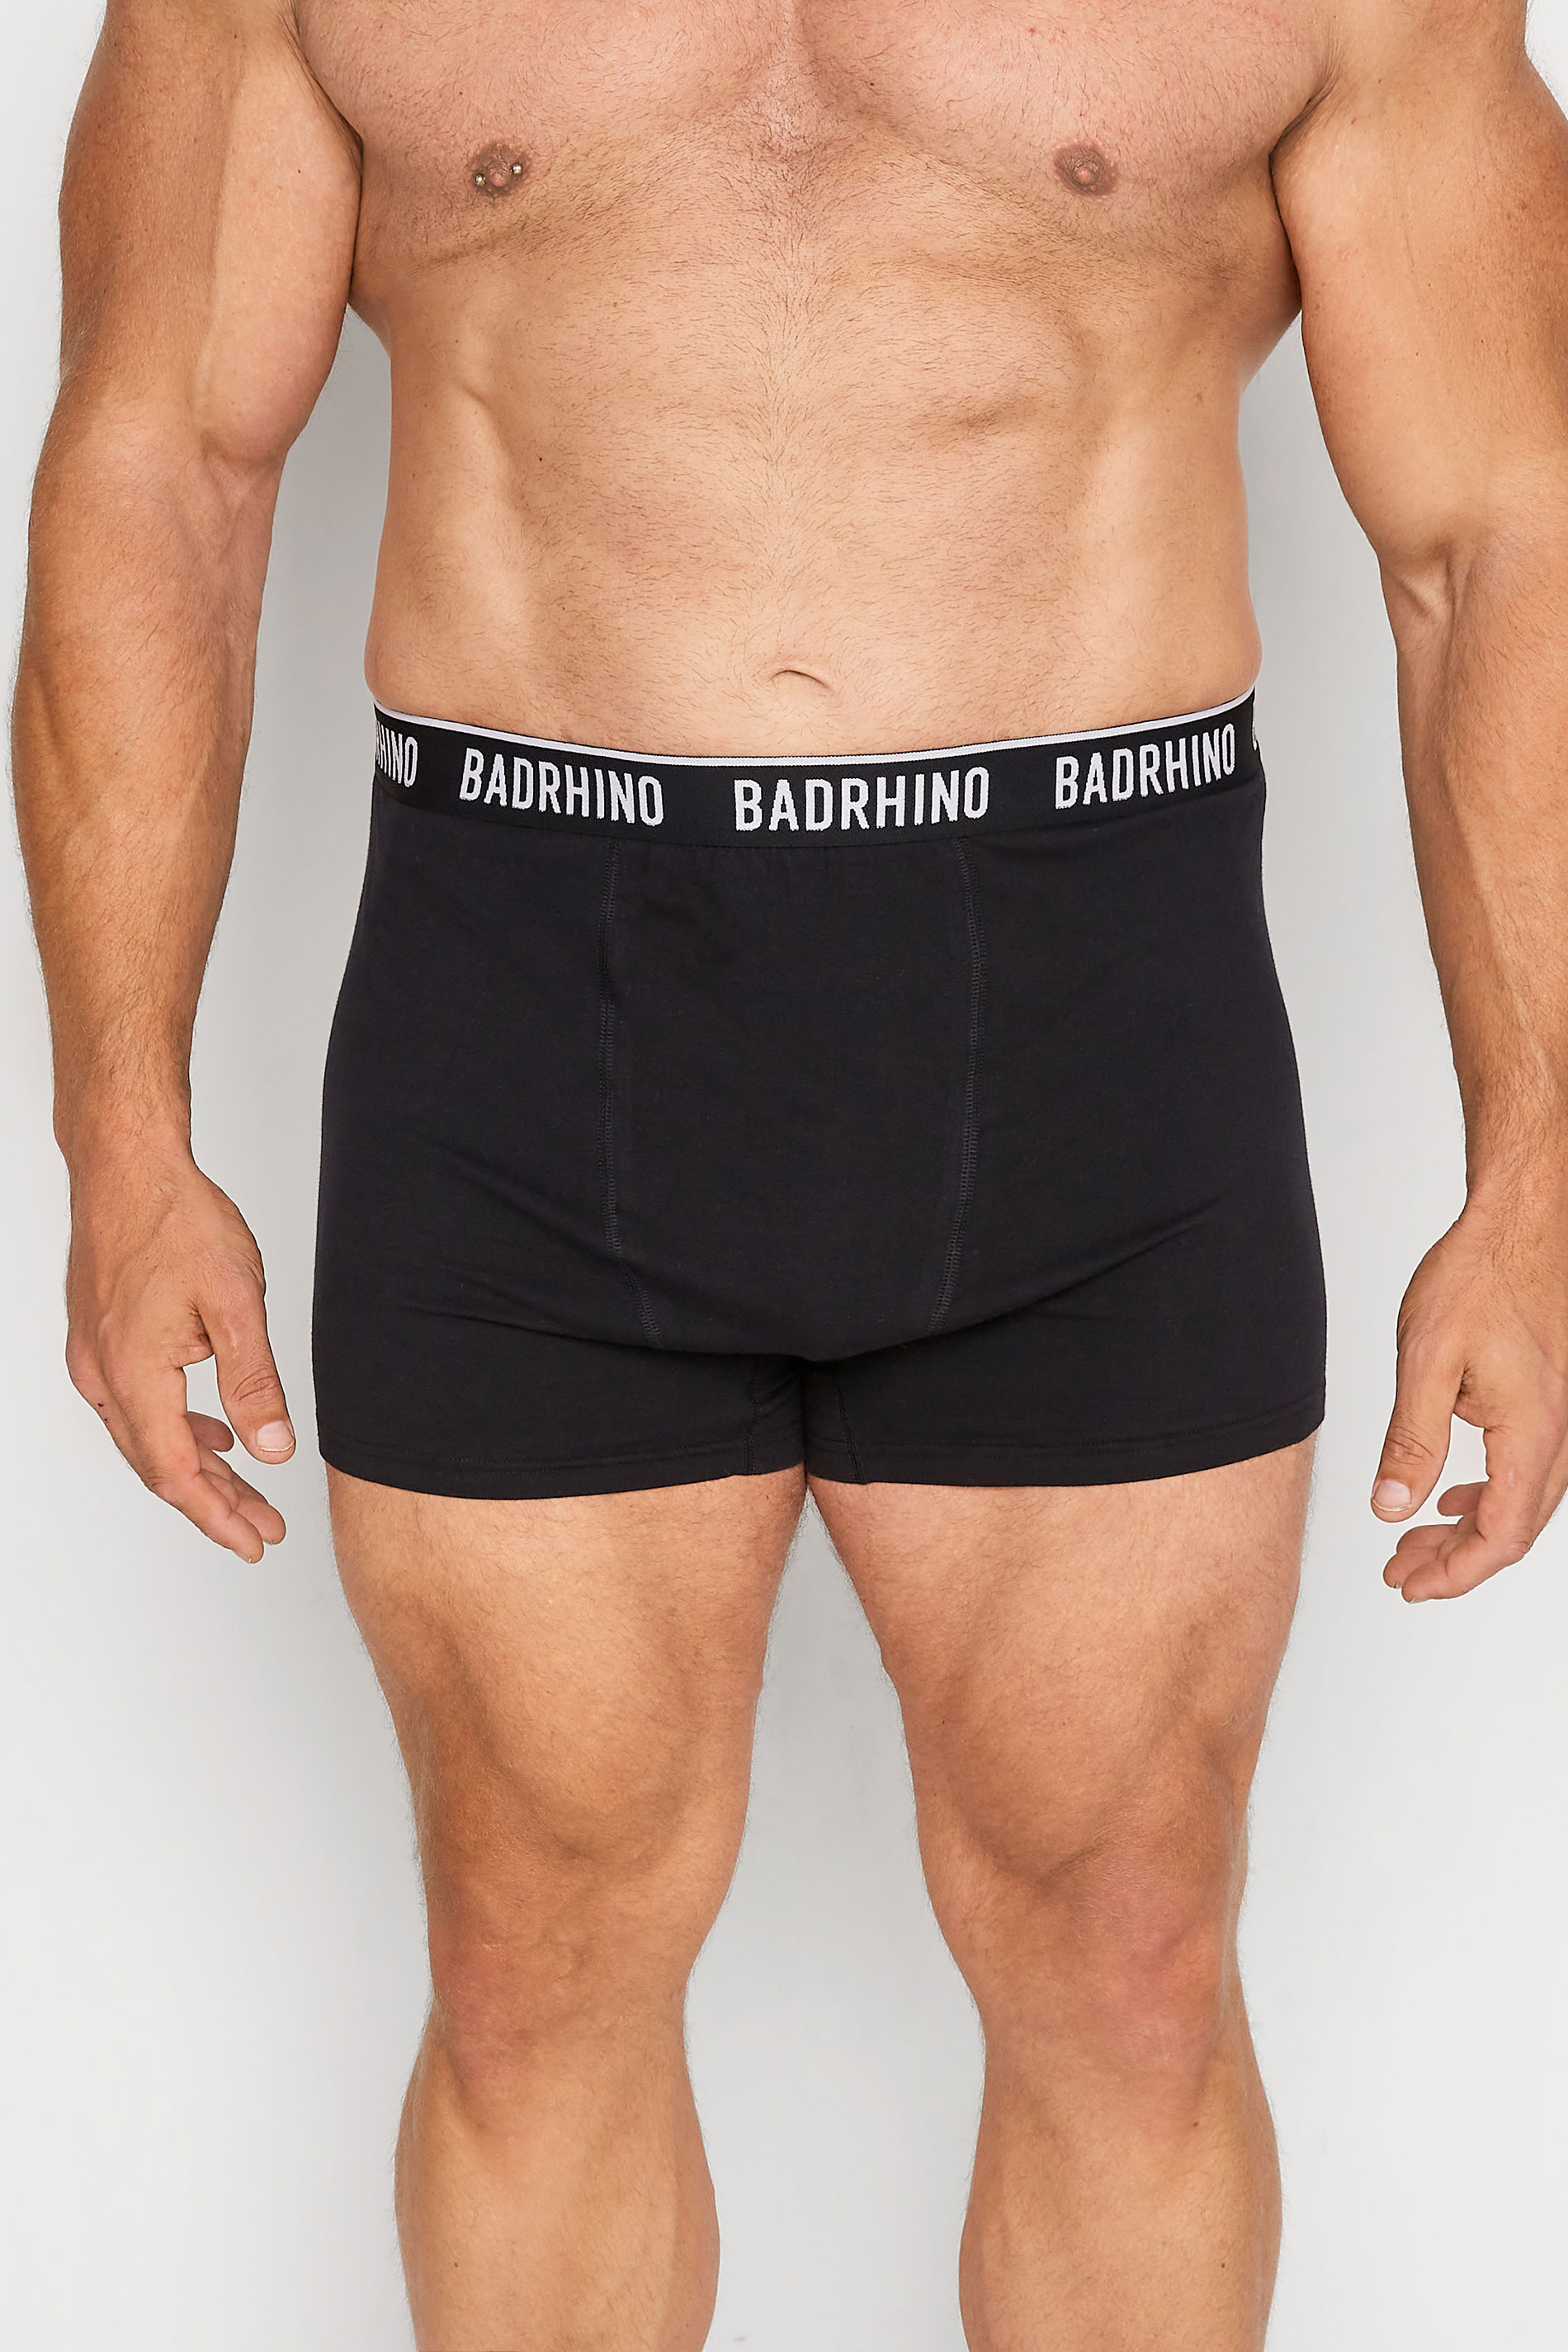 BadRhino Big & Tall 5 PACK Black Boxers | BadRhino 3